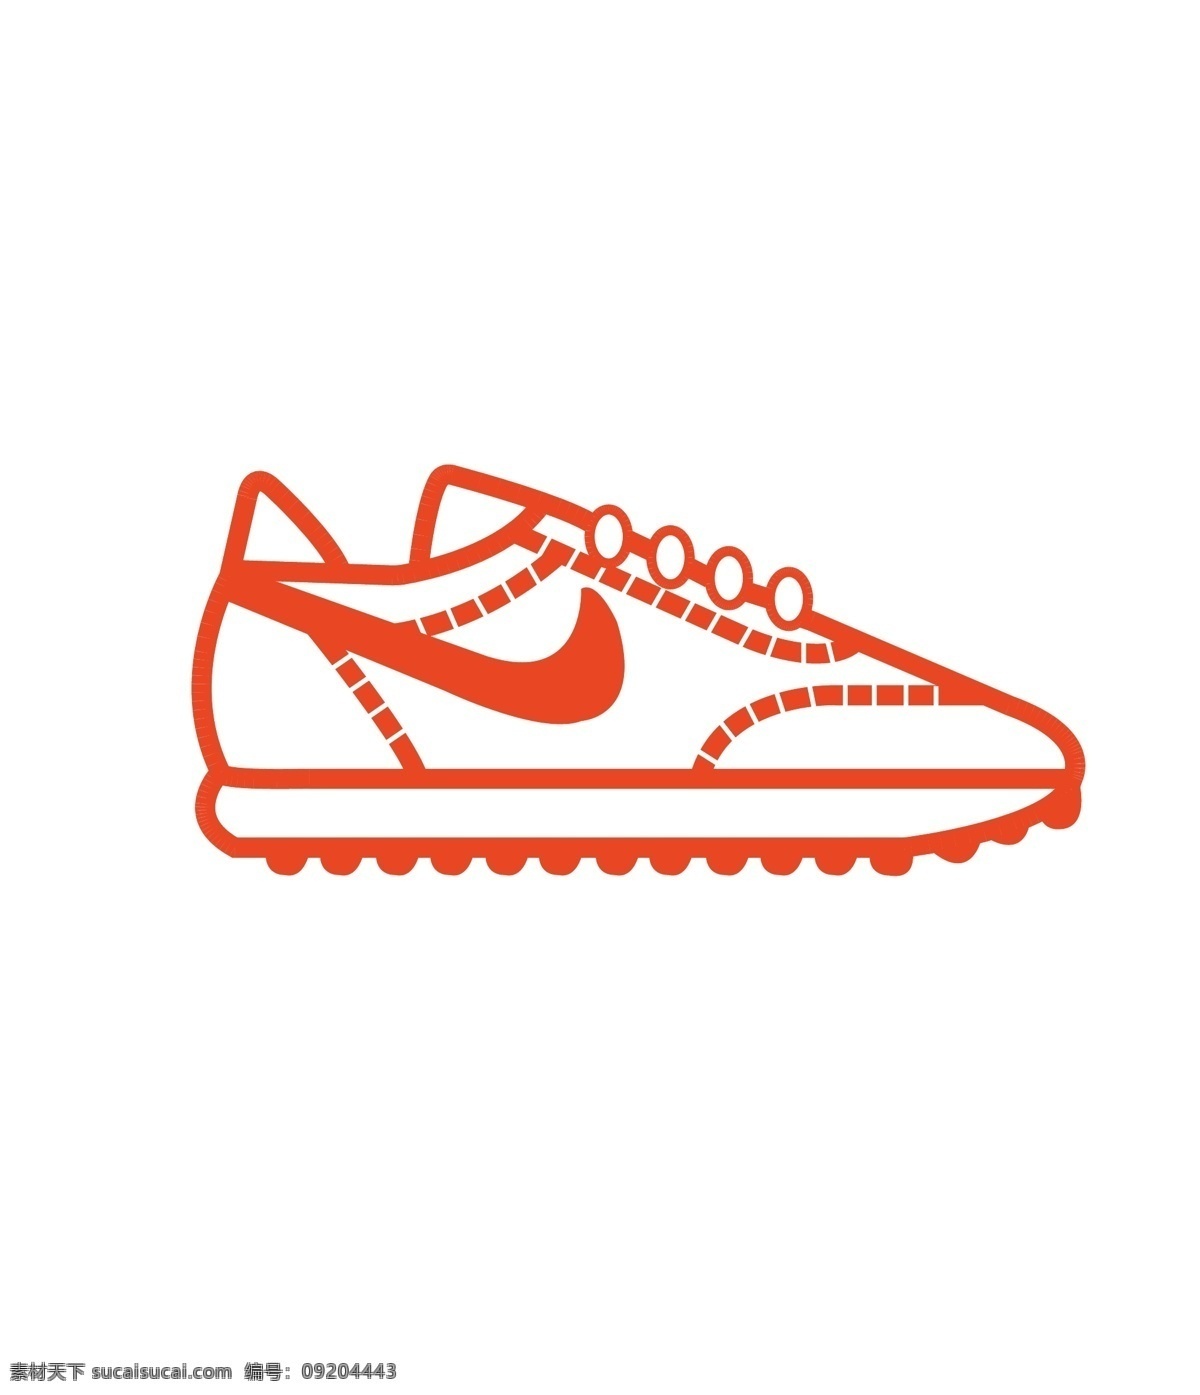 运动鞋图片 鞋子 钩子 运动鞋 图标 橙色 文化艺术 体育运动